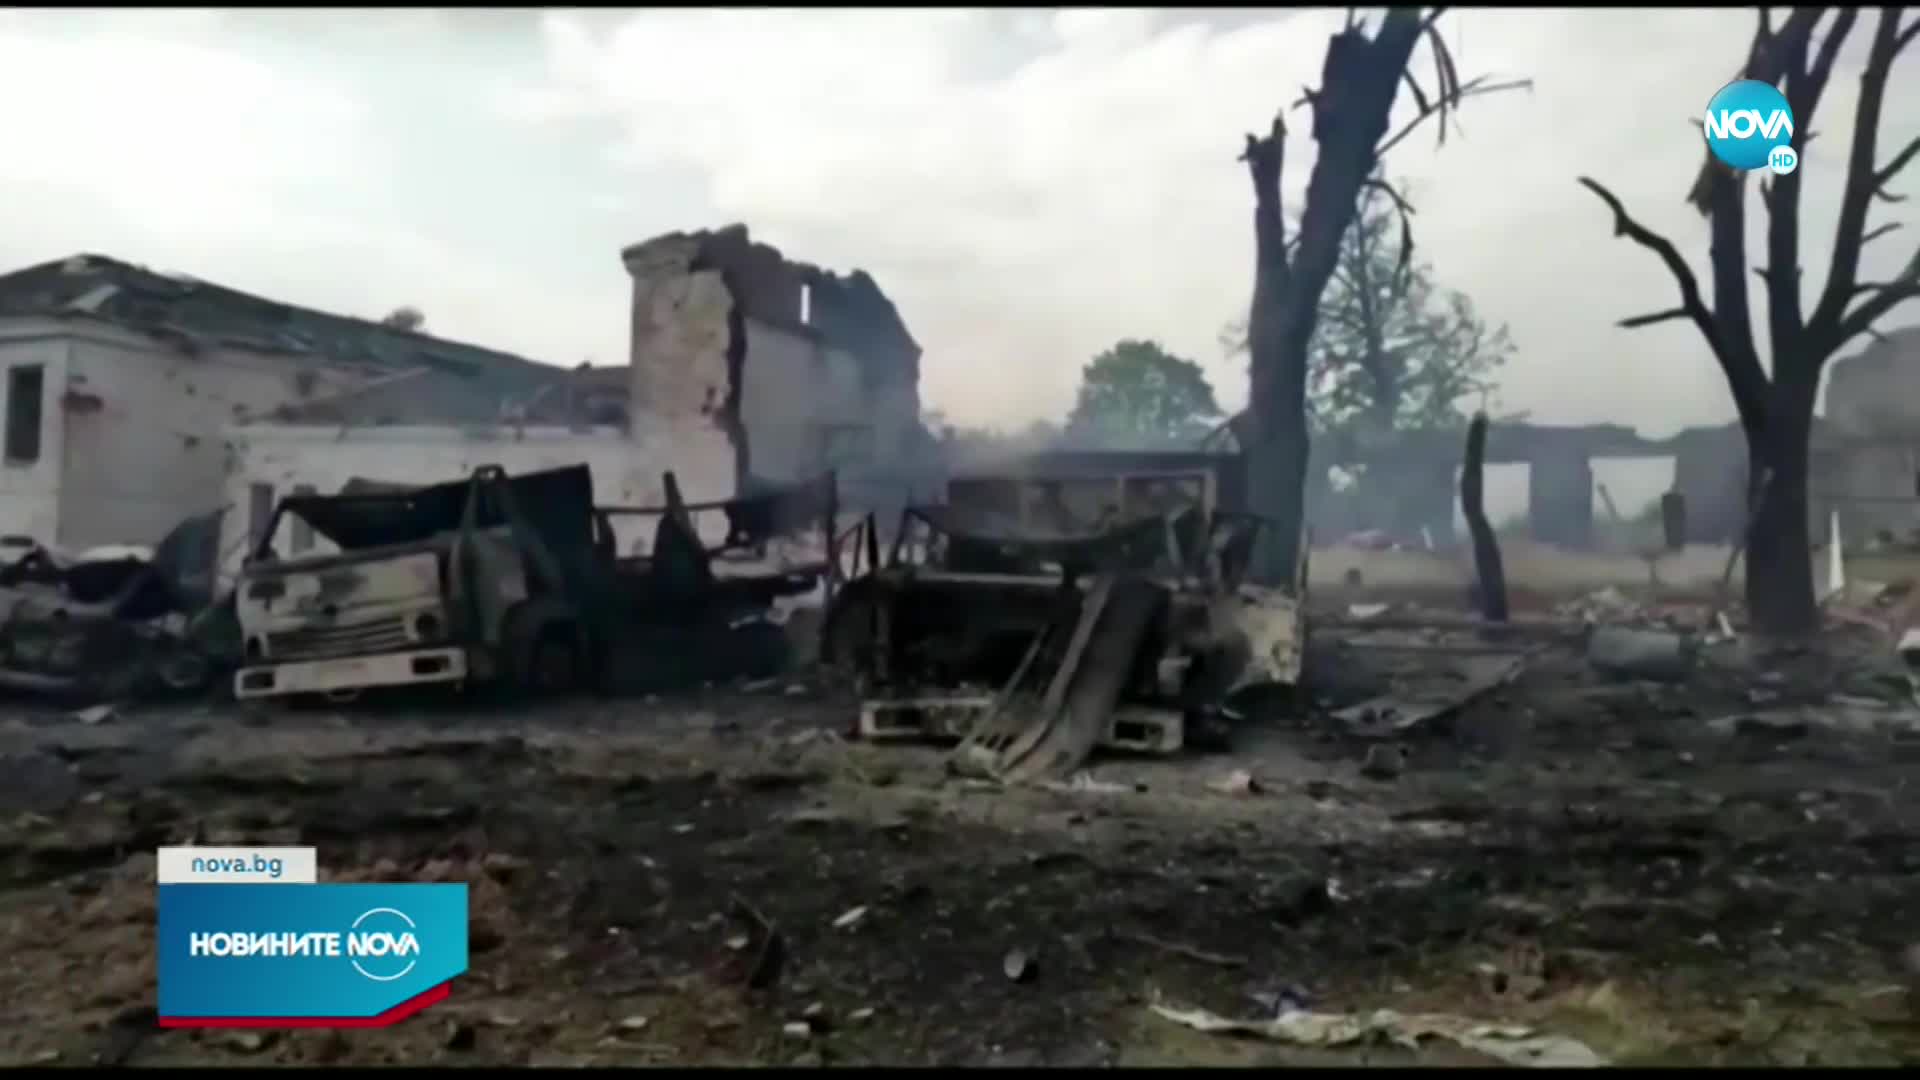 ООН: Много убийства на цивилни в Украйна нося белезите на военни престъпления